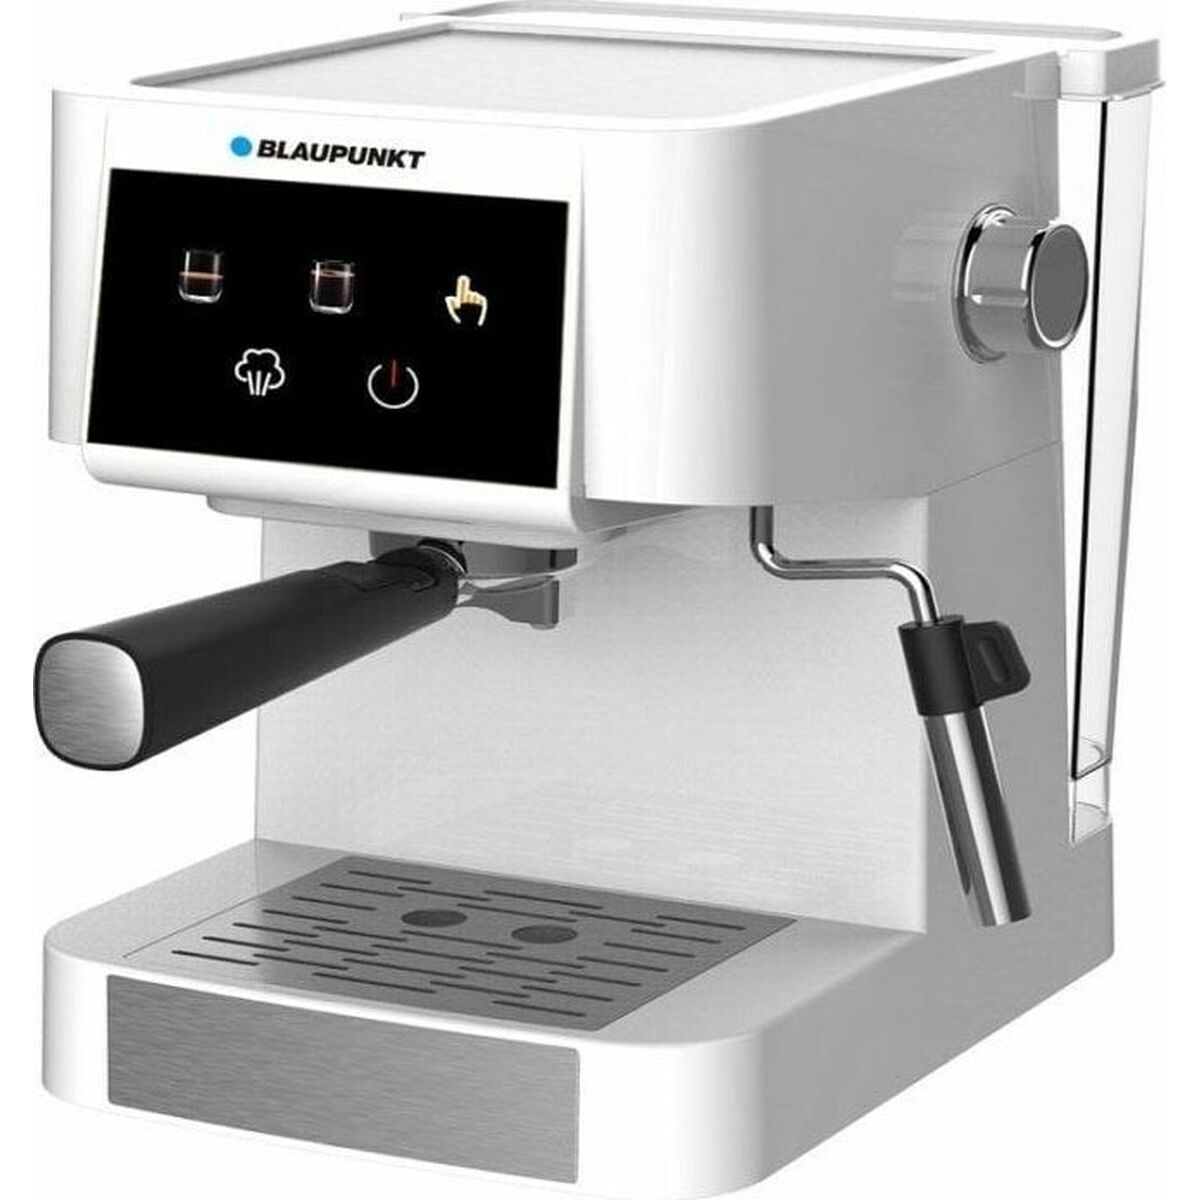 Superautomatische Kaffeemaschine Blaupunkt AGDBLCM009 Weiß Schwarz Silberfarben 950 W 1,5 L - CA International 